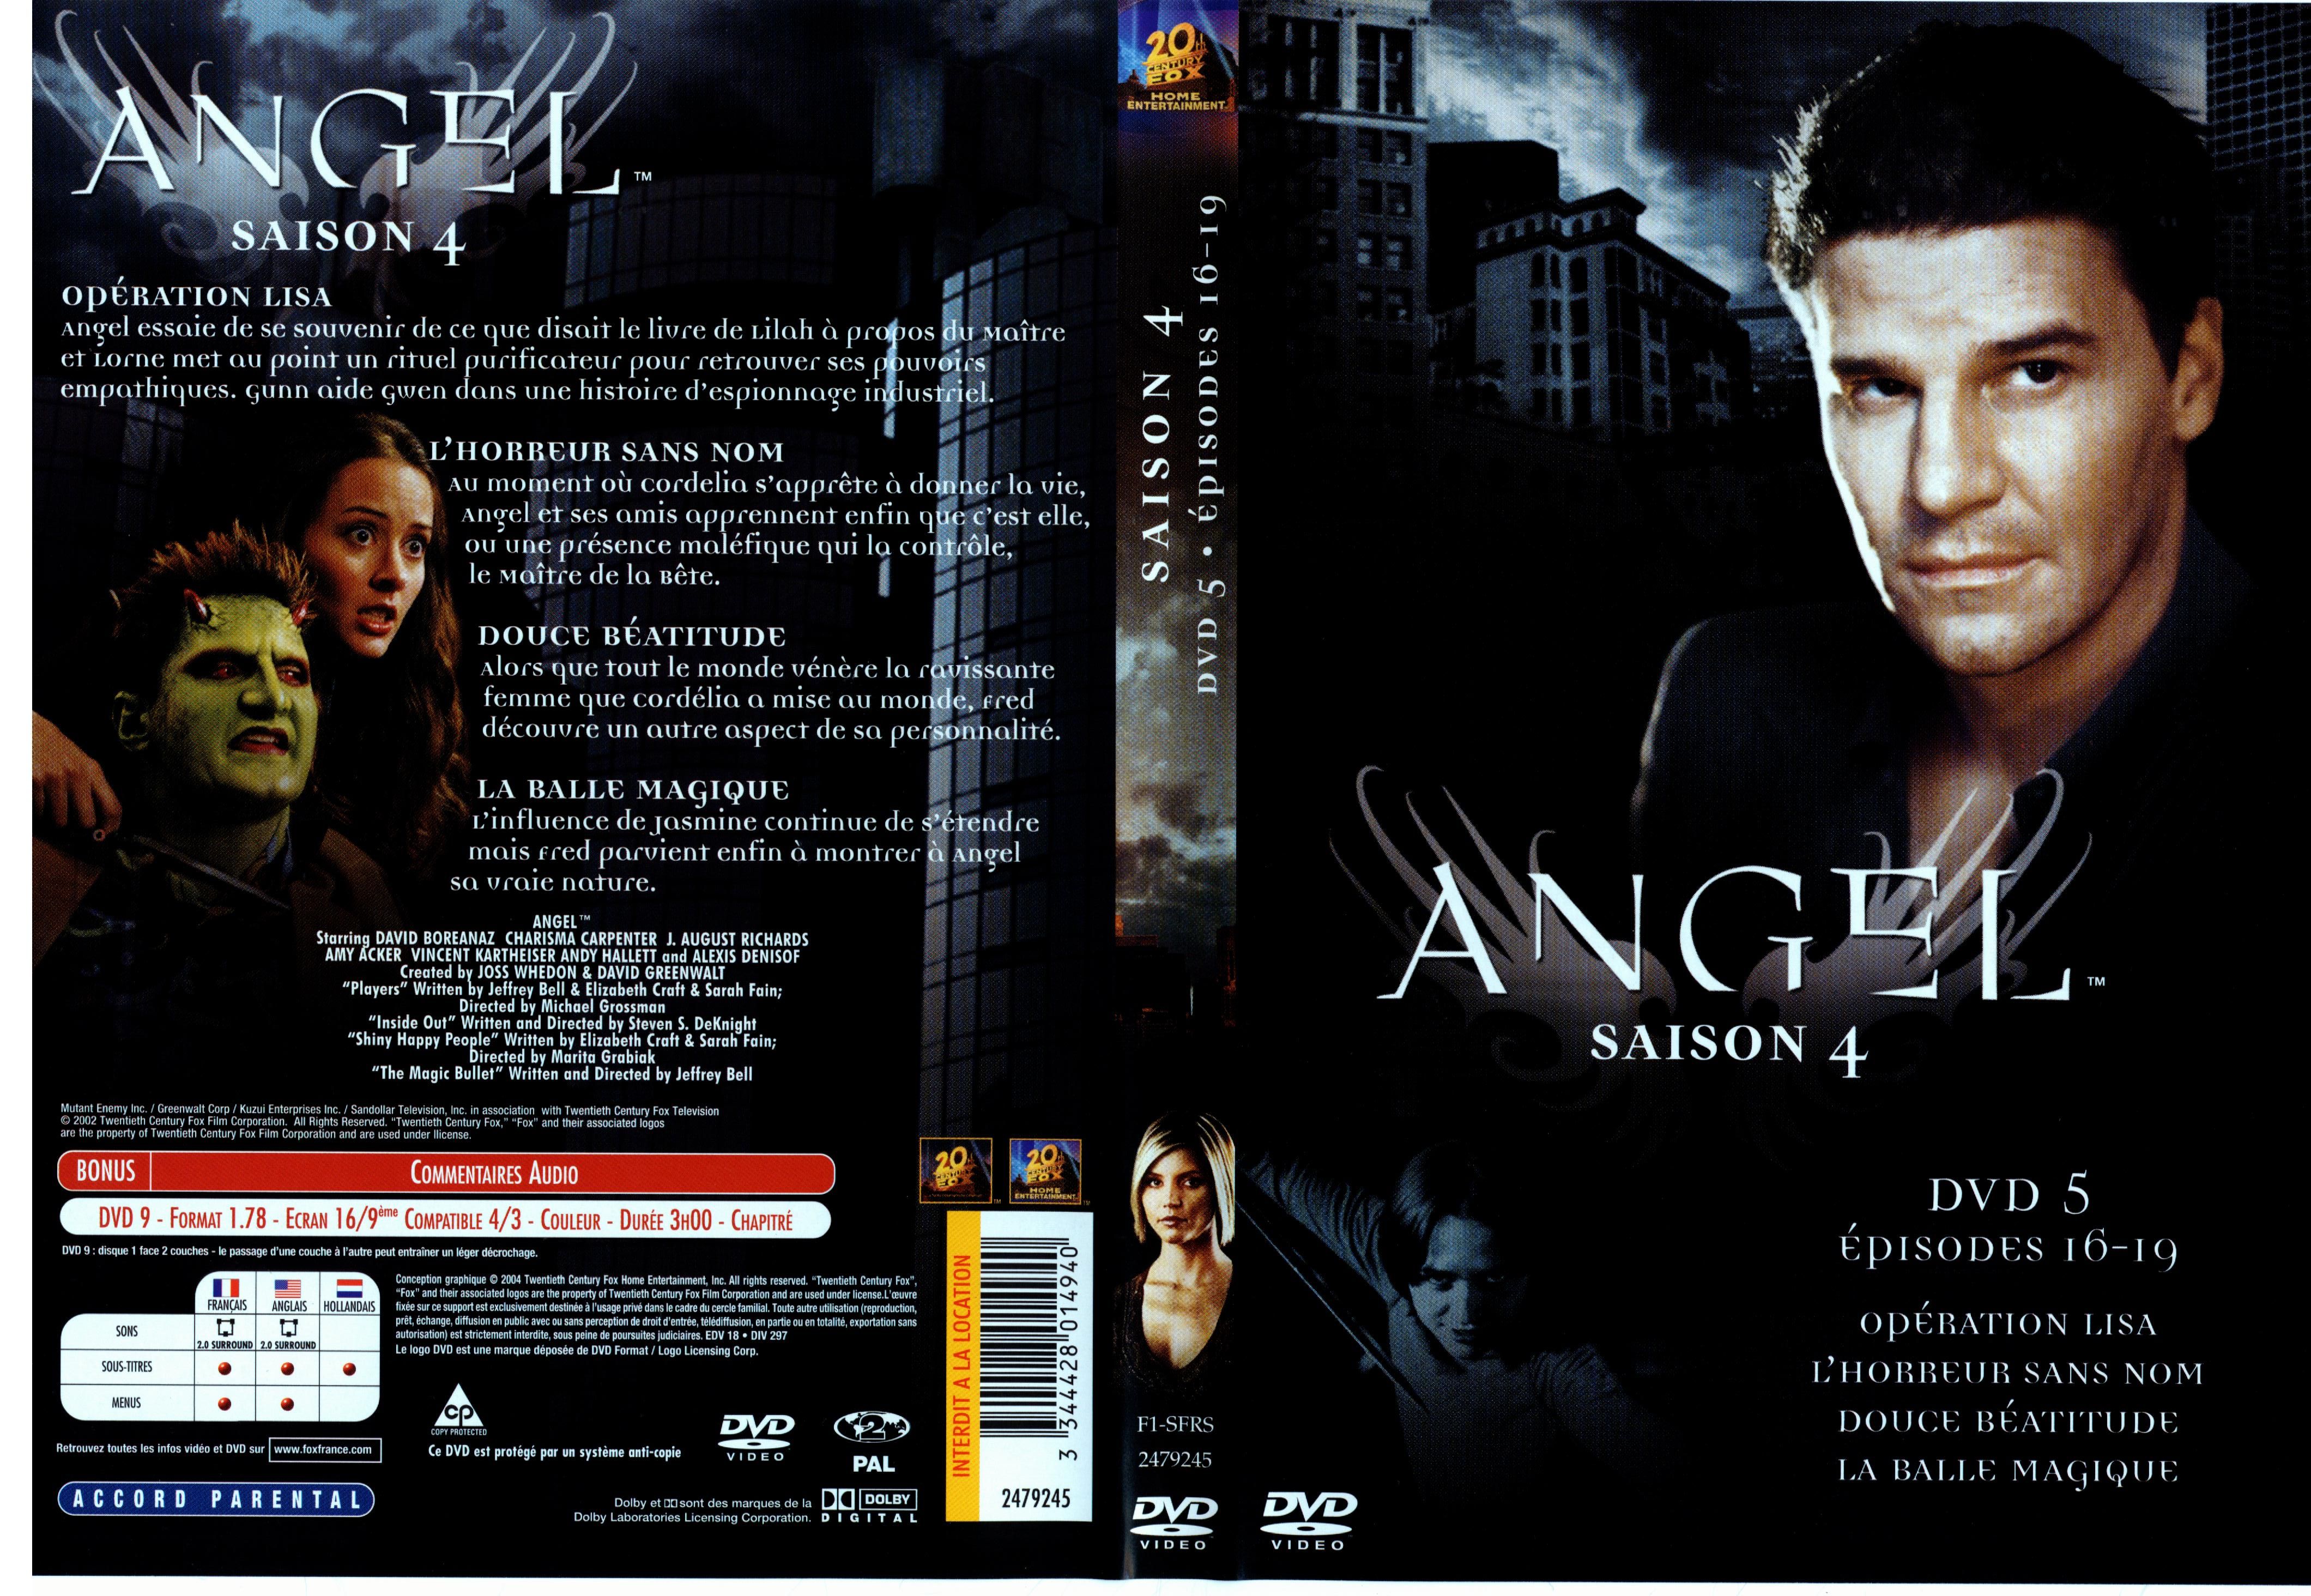 Jaquette DVD Angel Saison 4 dvd 5